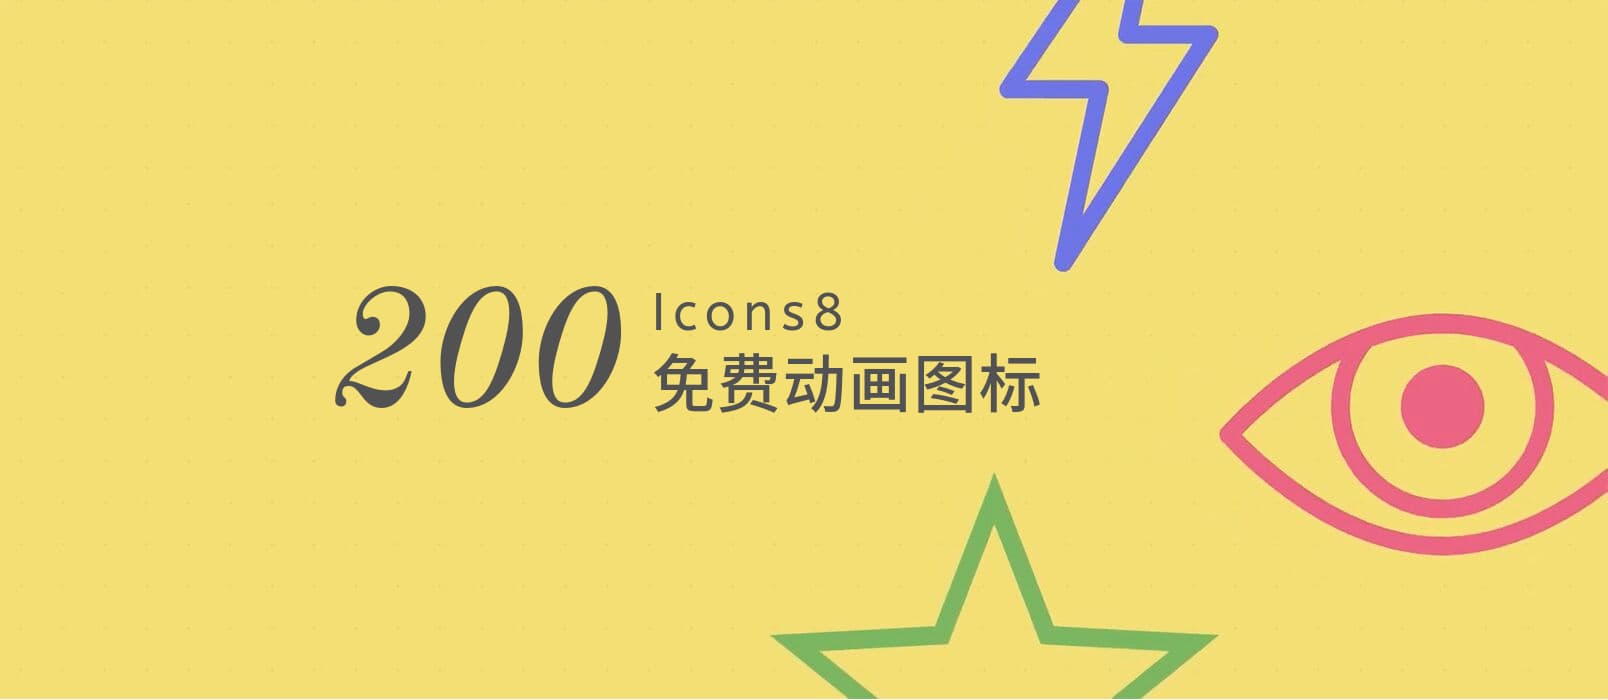 著名的免费图标网站 Icons8 发布了 200+ 动画图标 1